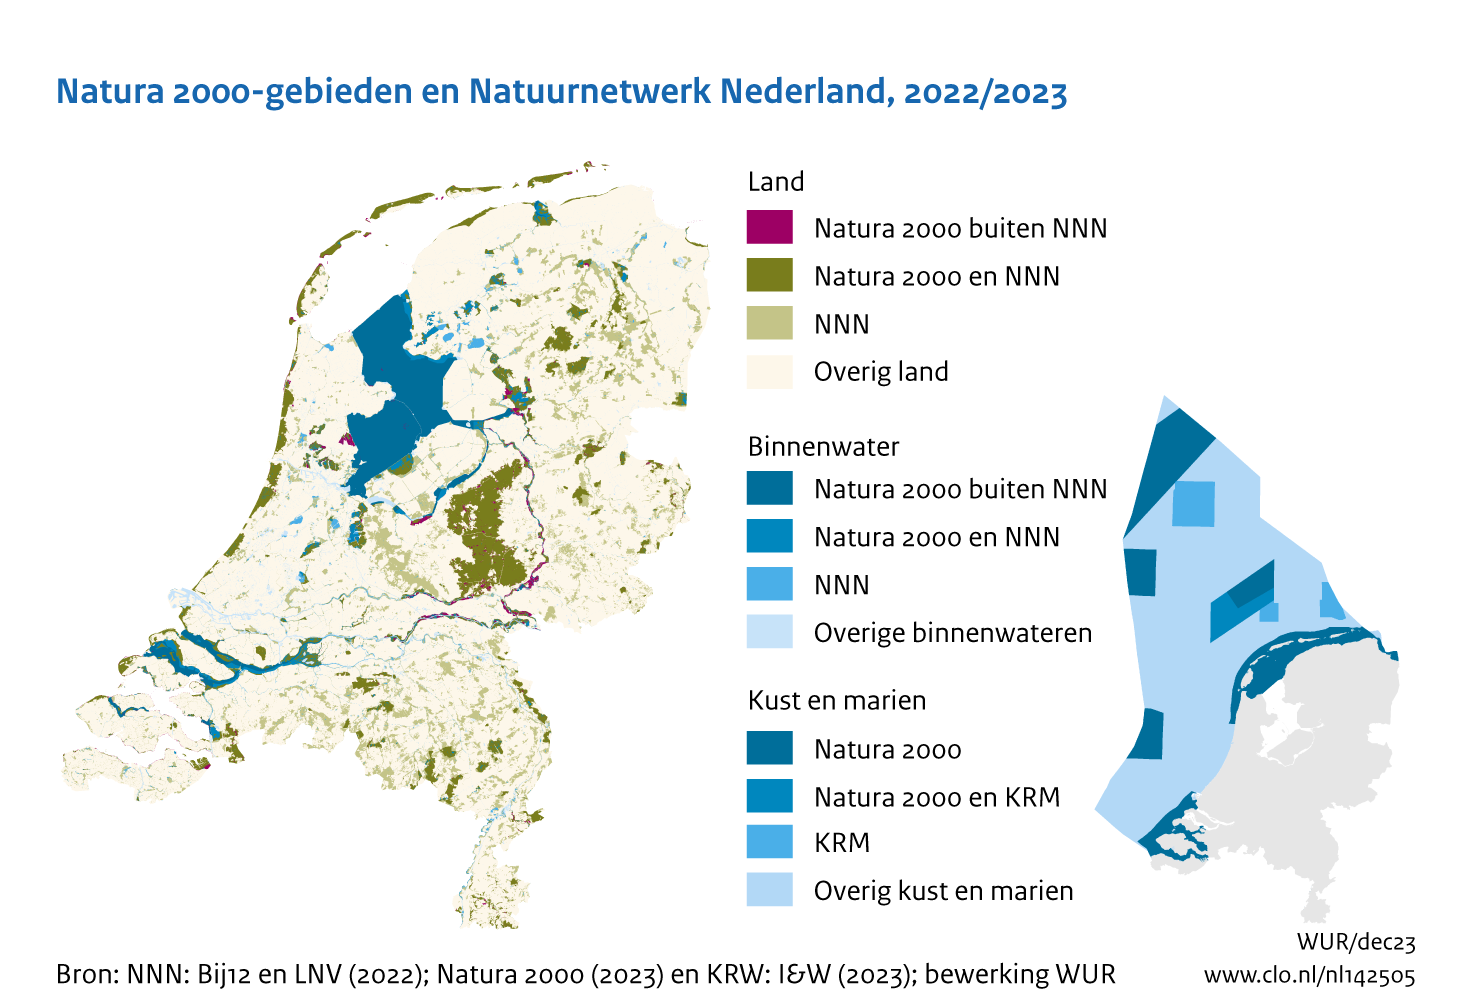 Figuur Natura 2000-gebieden en Natuurnetwerk Nederland. In de rest van de tekst wordt deze figuur uitgebreider uitgelegd.